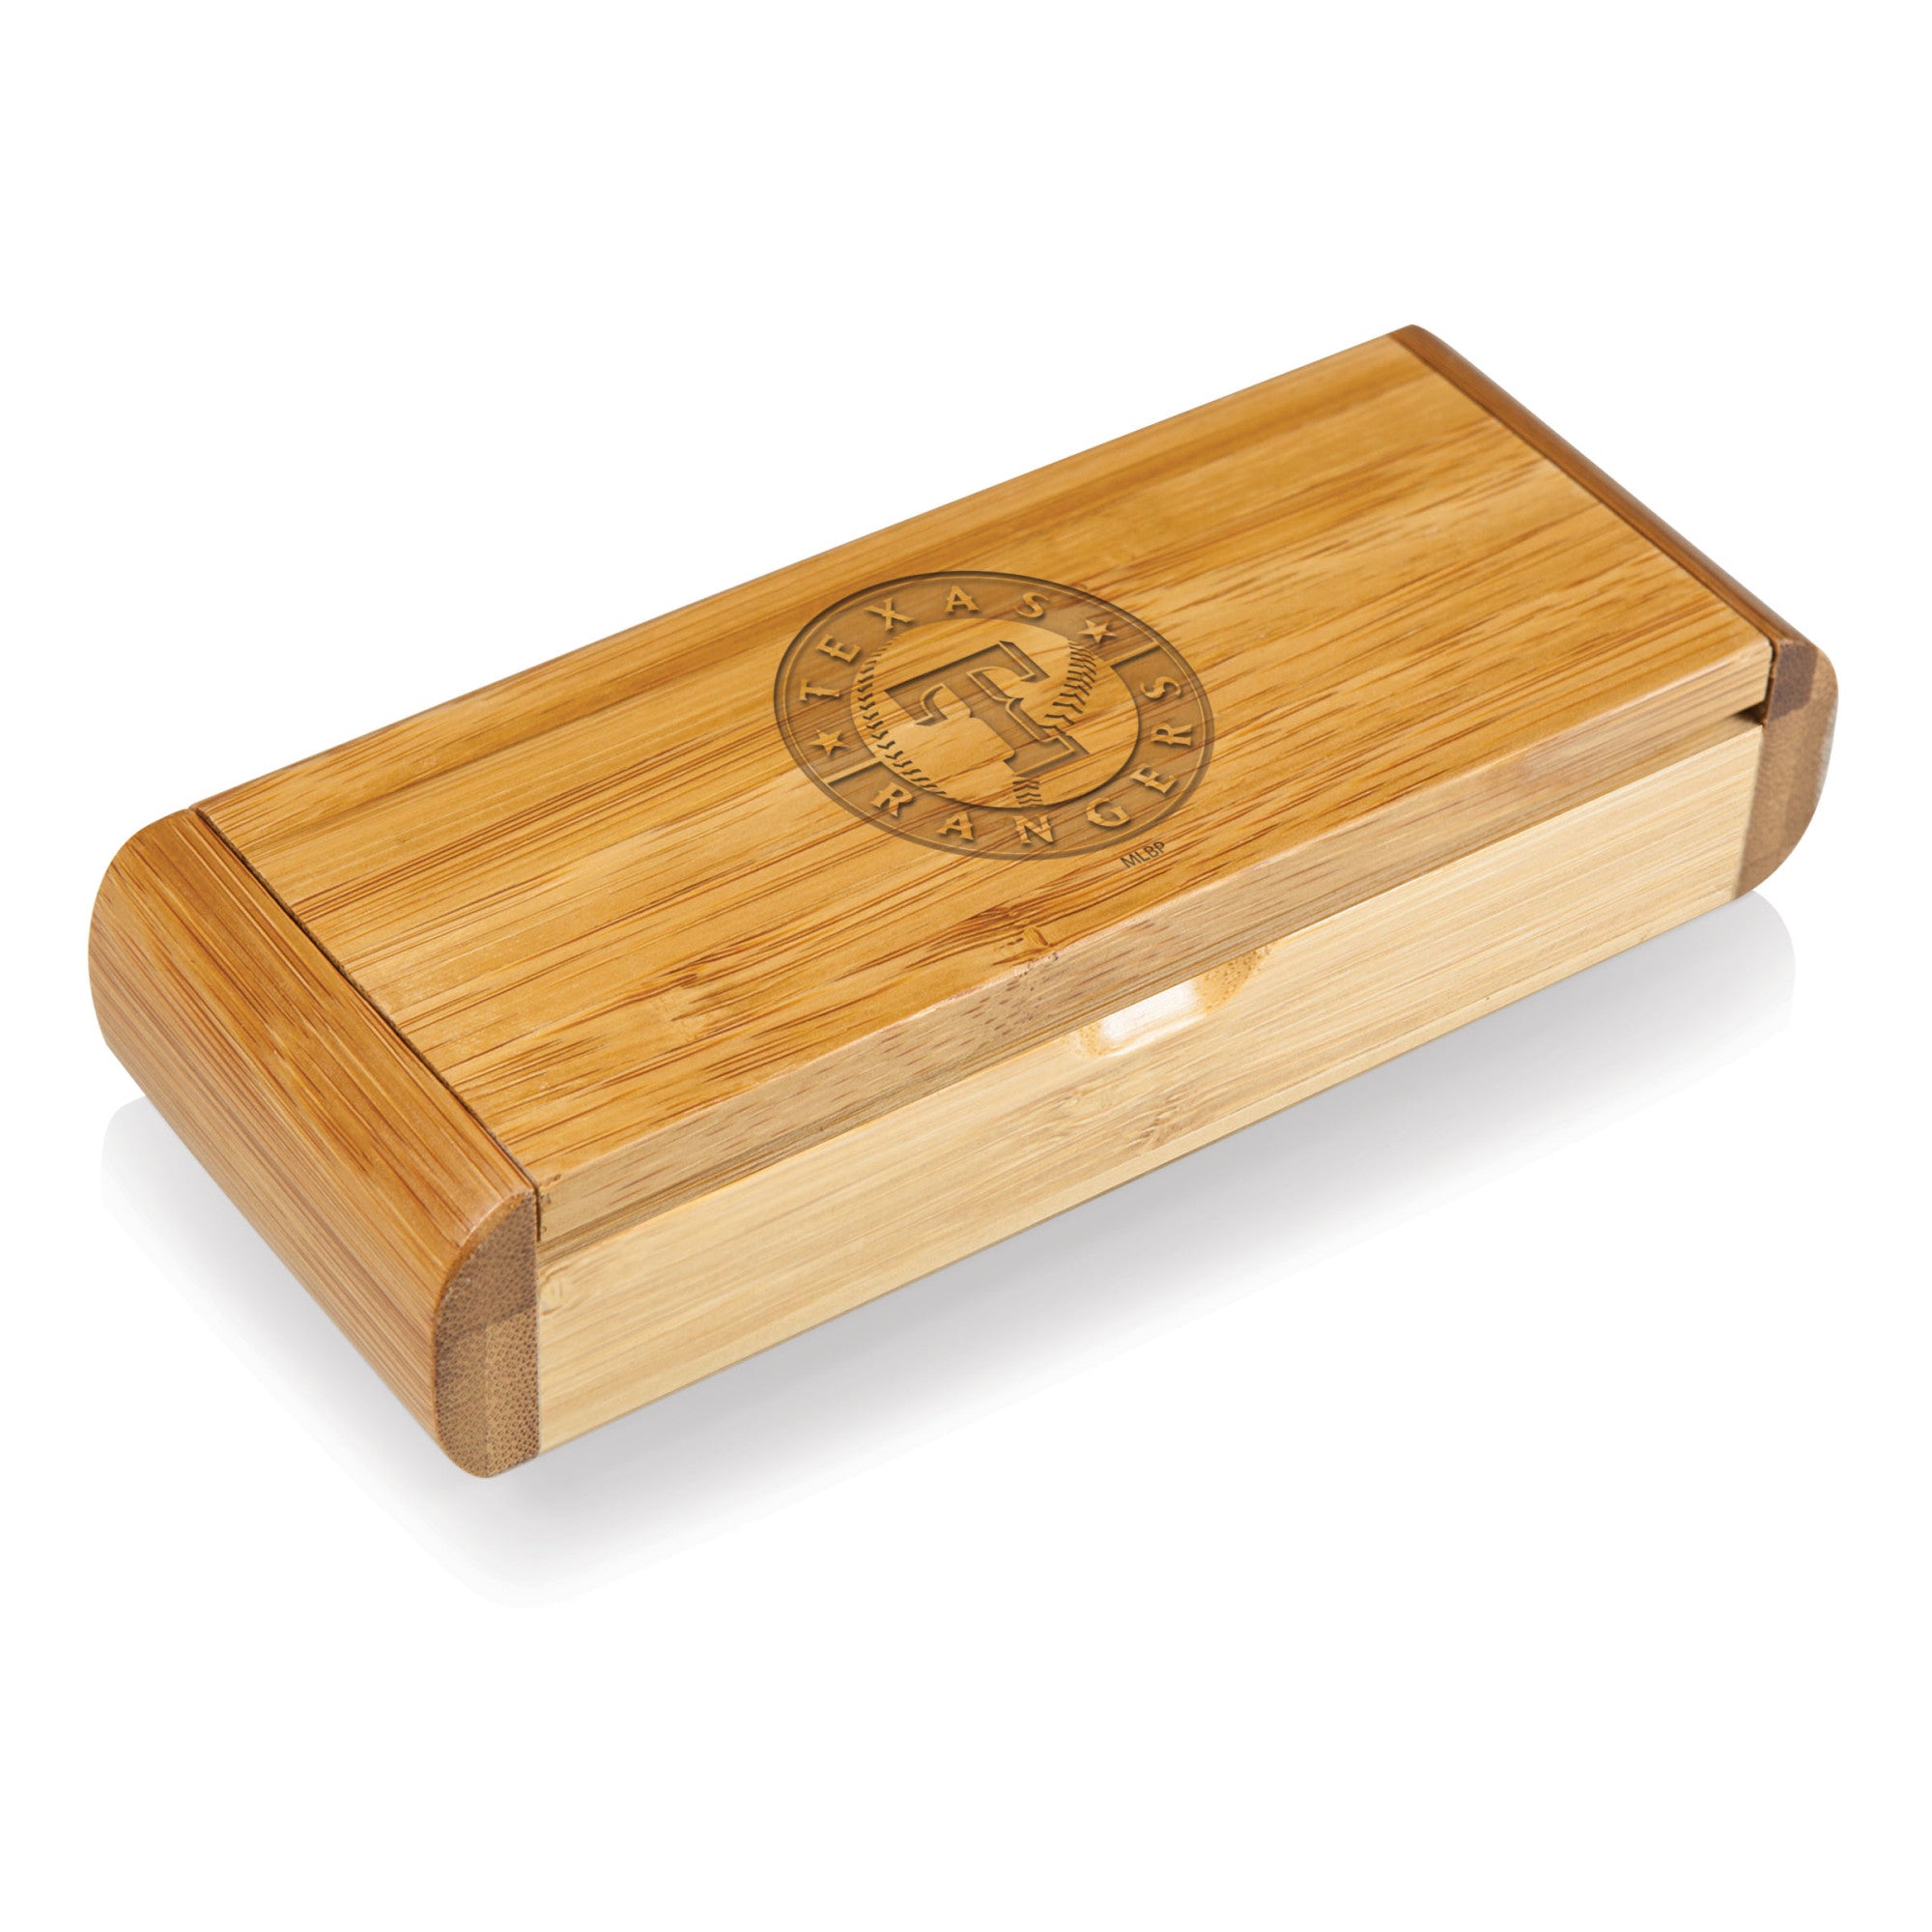 Texas Rangers - Elan Deluxe Corkscrew In Bamboo Box